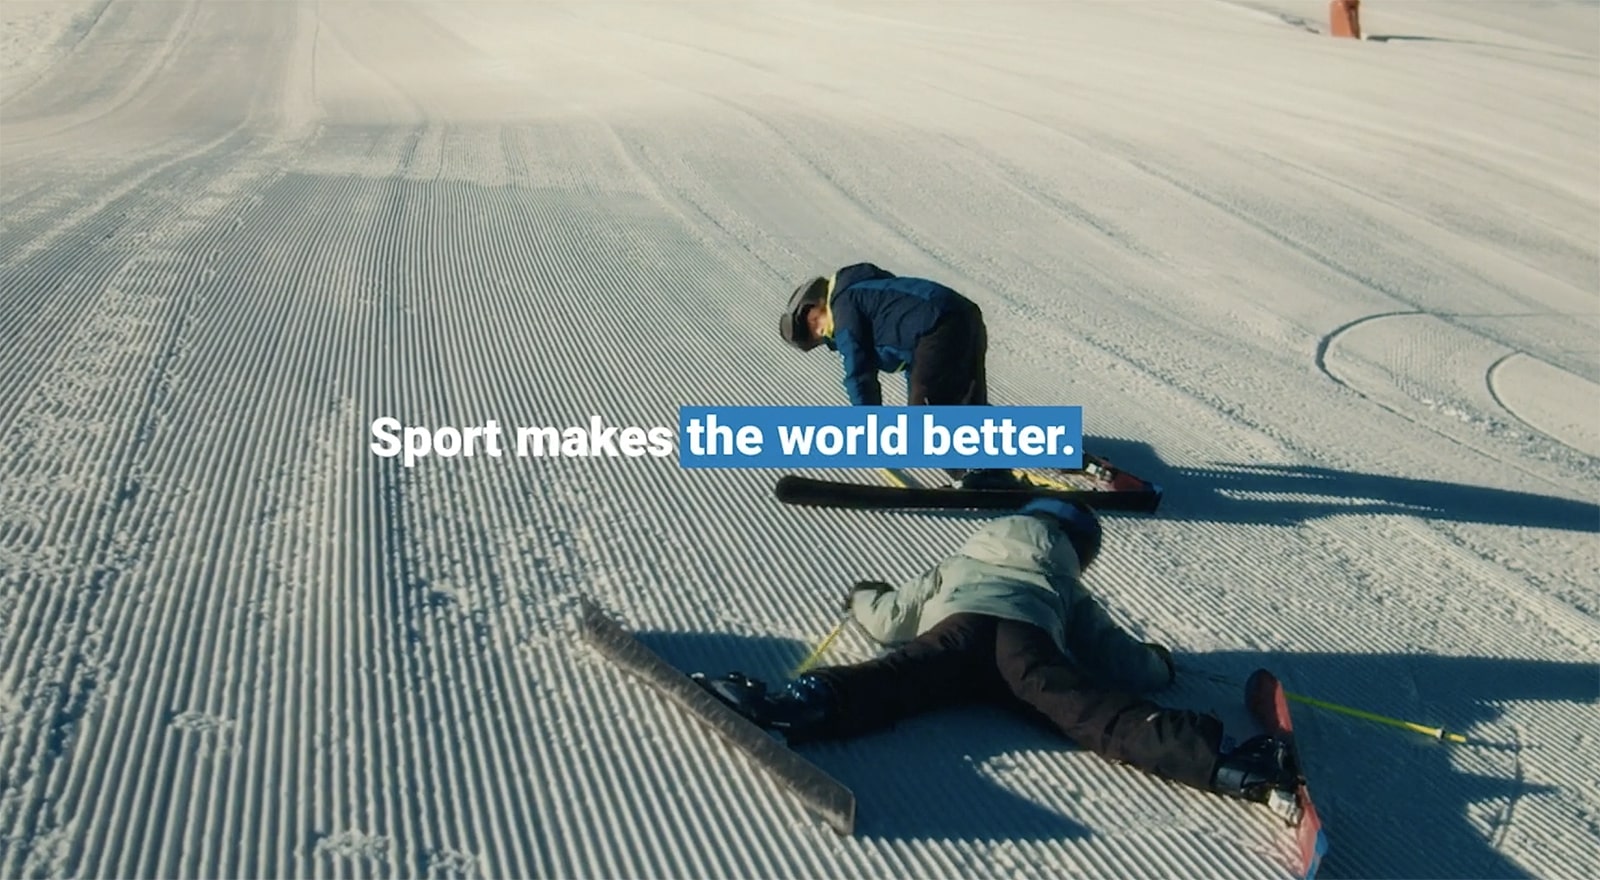 Decathlon | Sport makes the world better